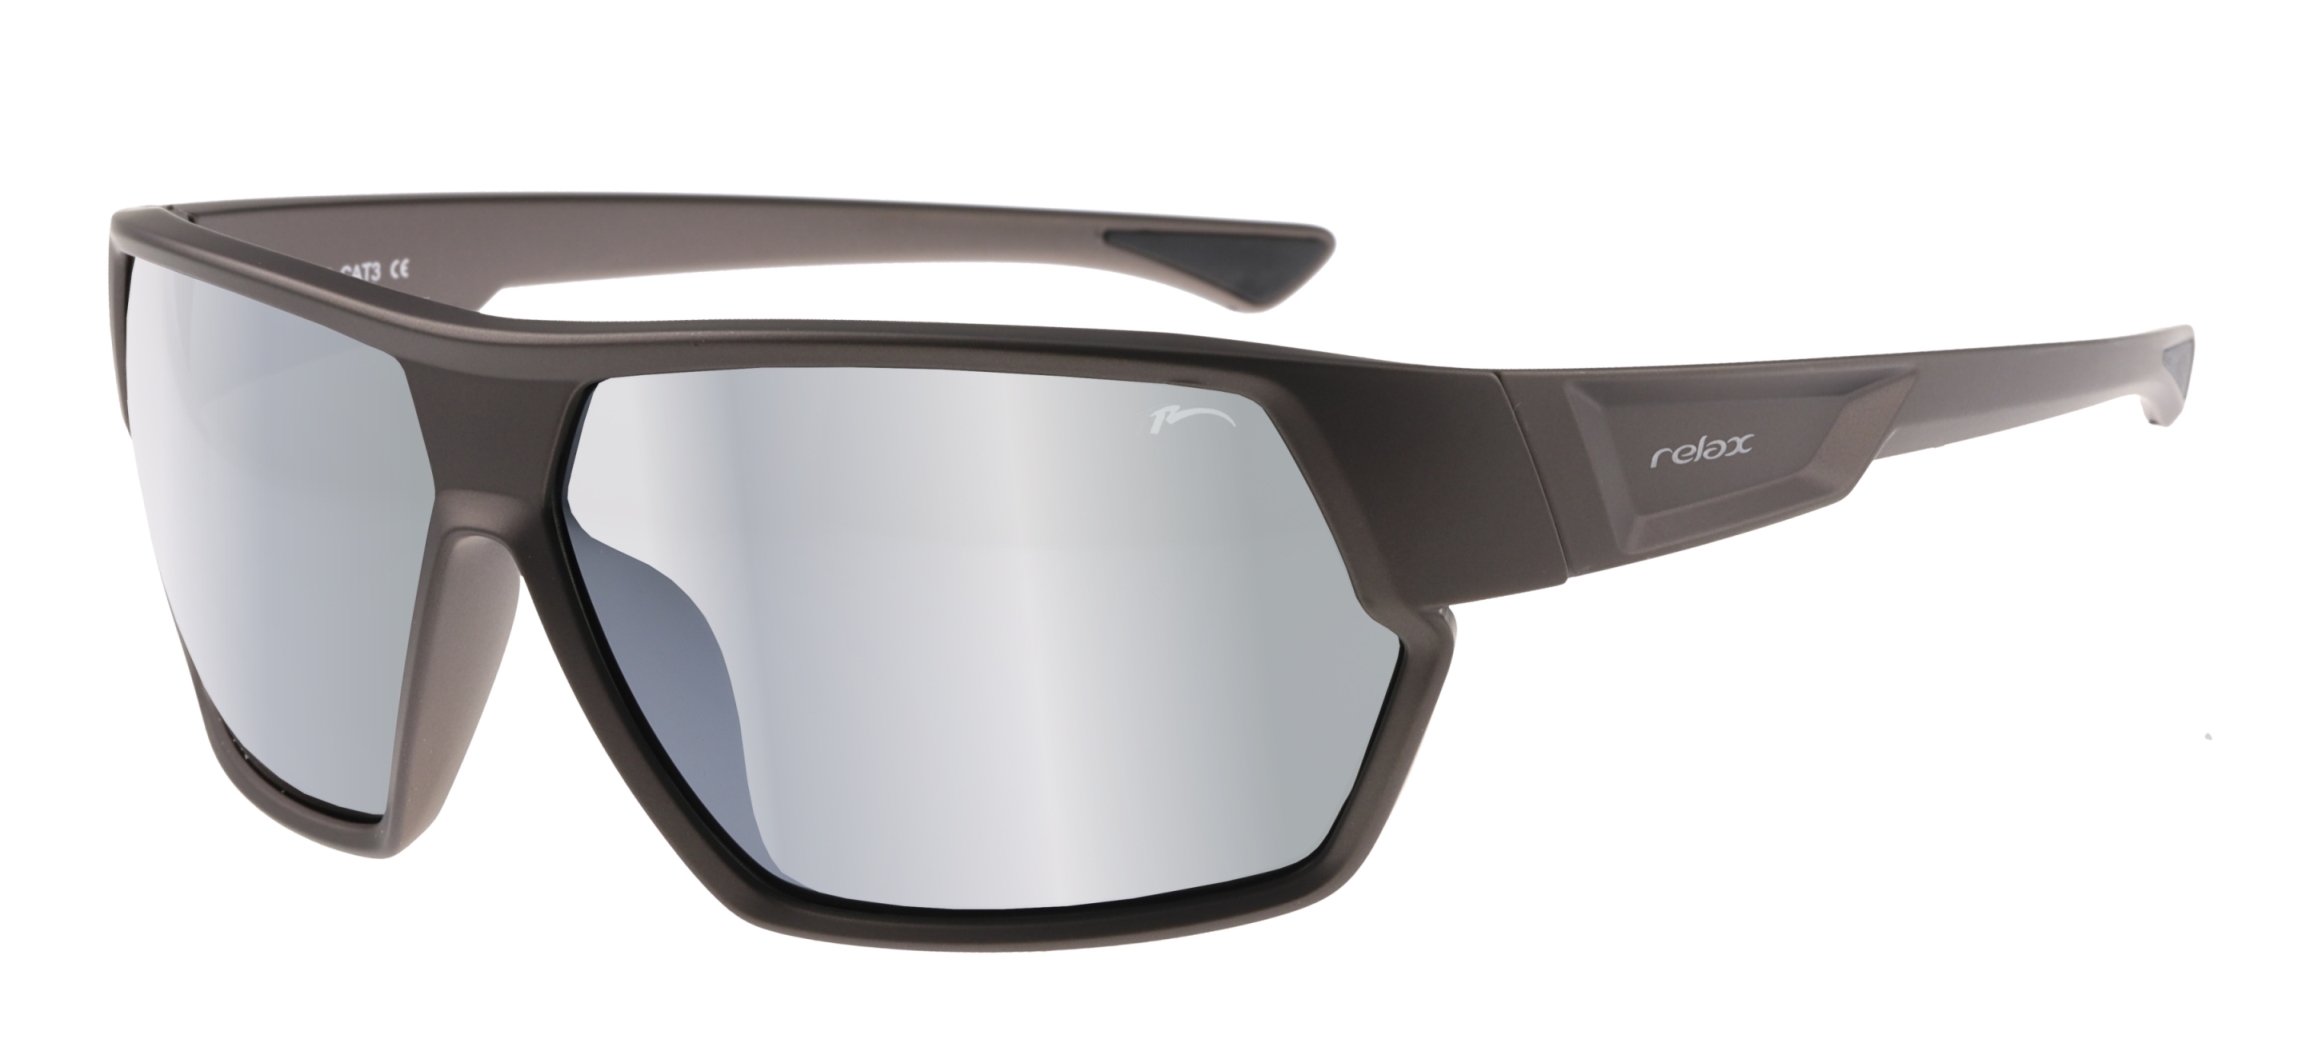 Polarized sport sunglasses  Relax Philip R5426C